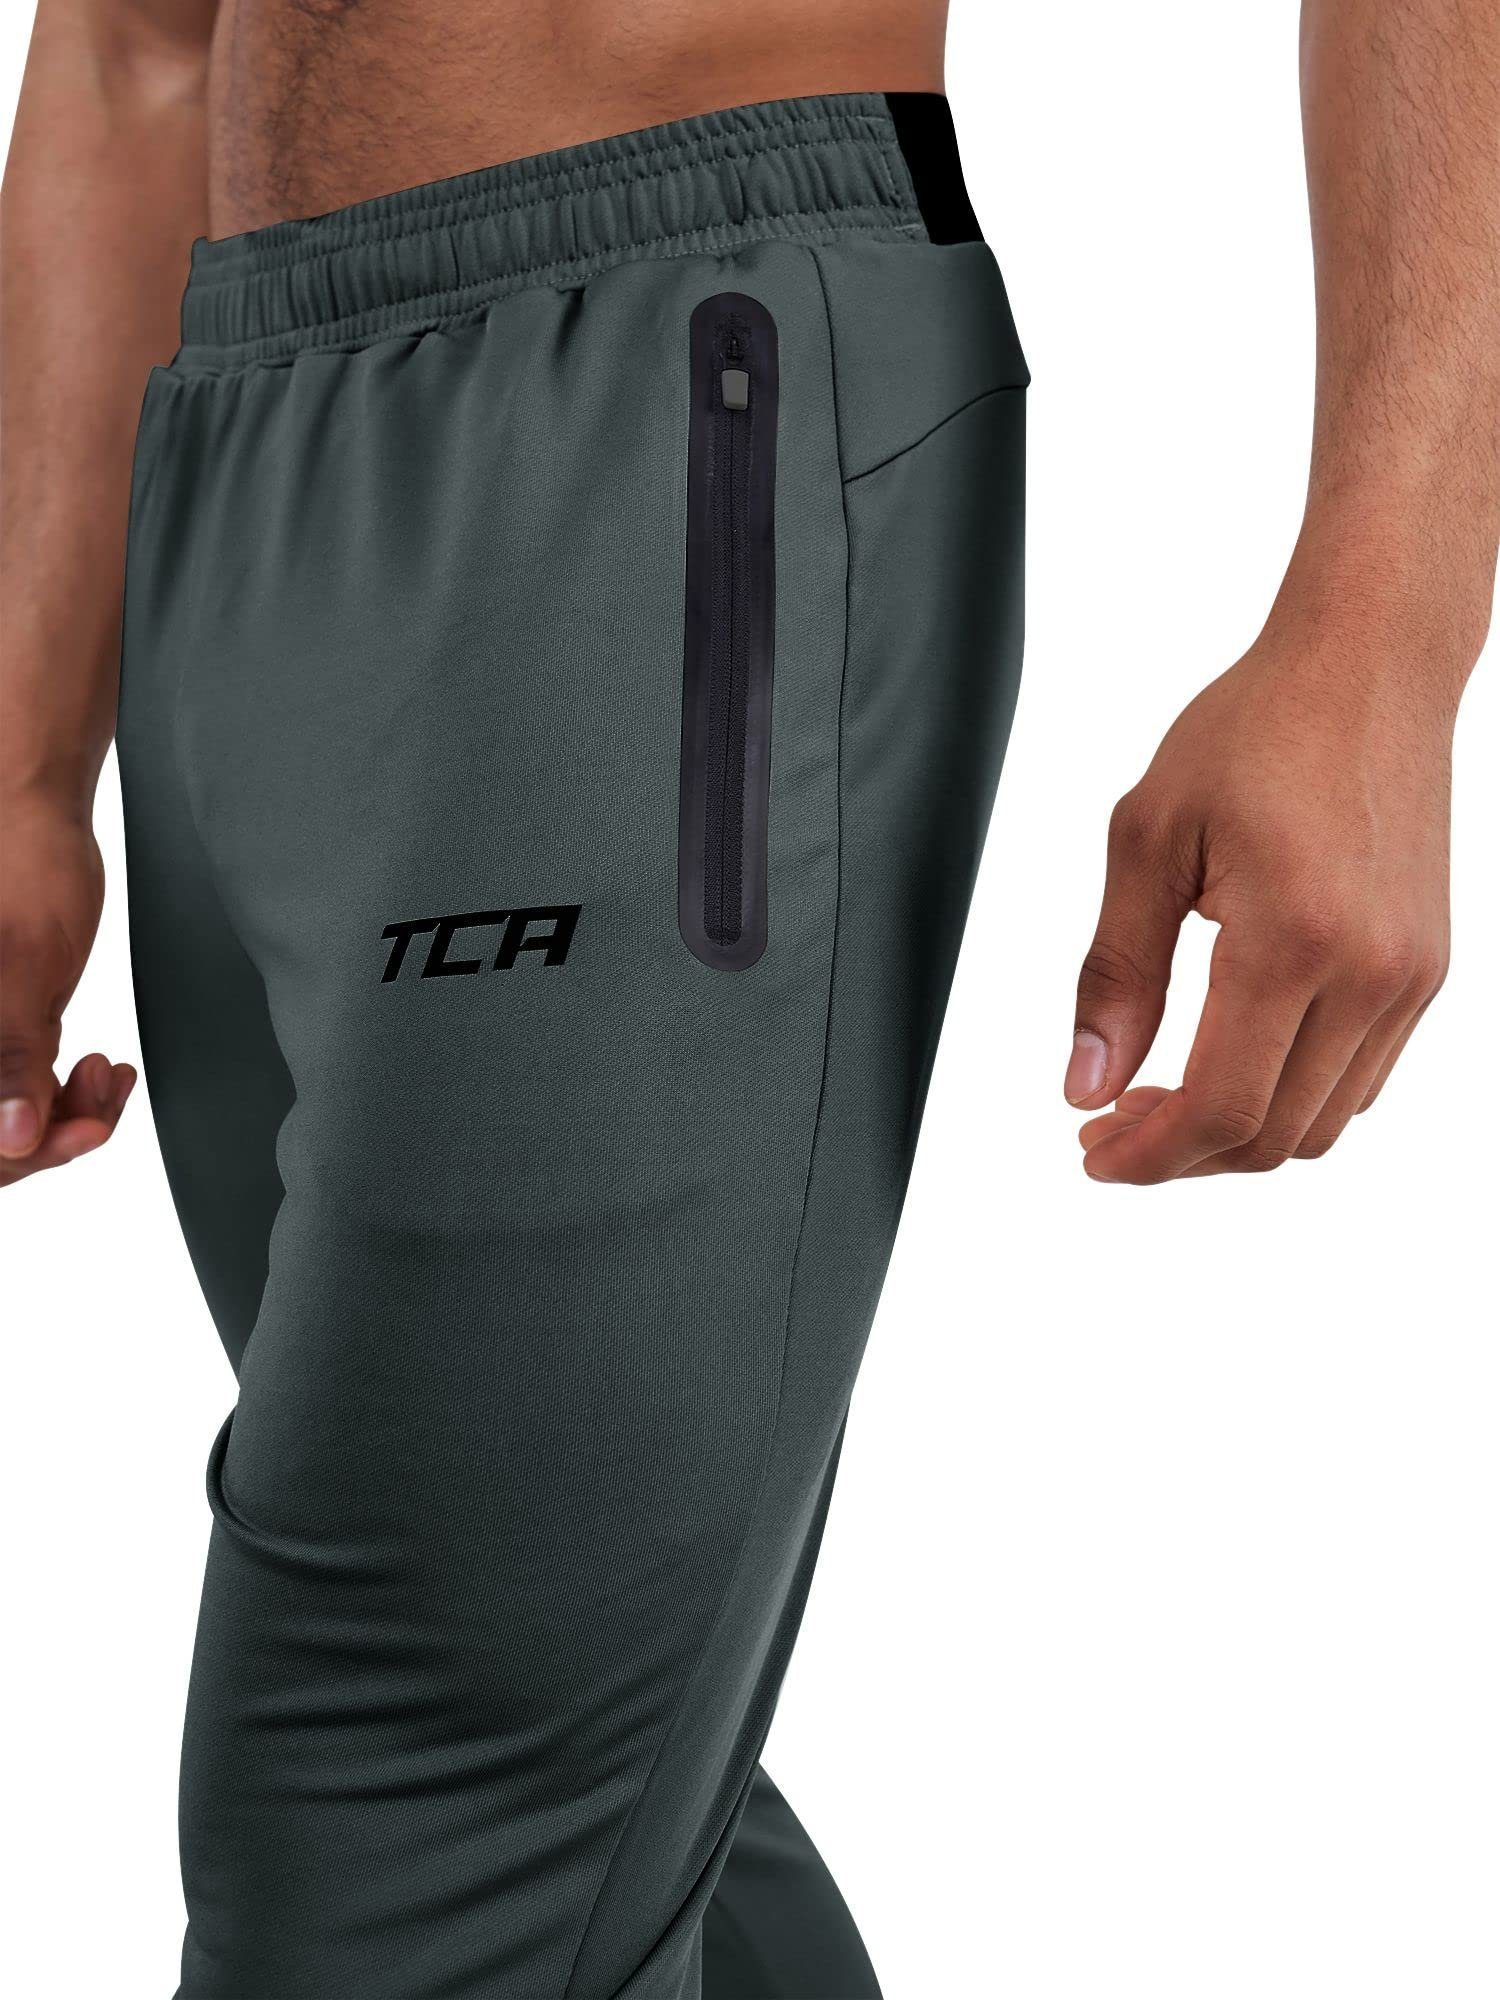 TCA Laufhose Herren mit Dunkelgrün - Jogginghosen TCA Reißverschlusstaschen